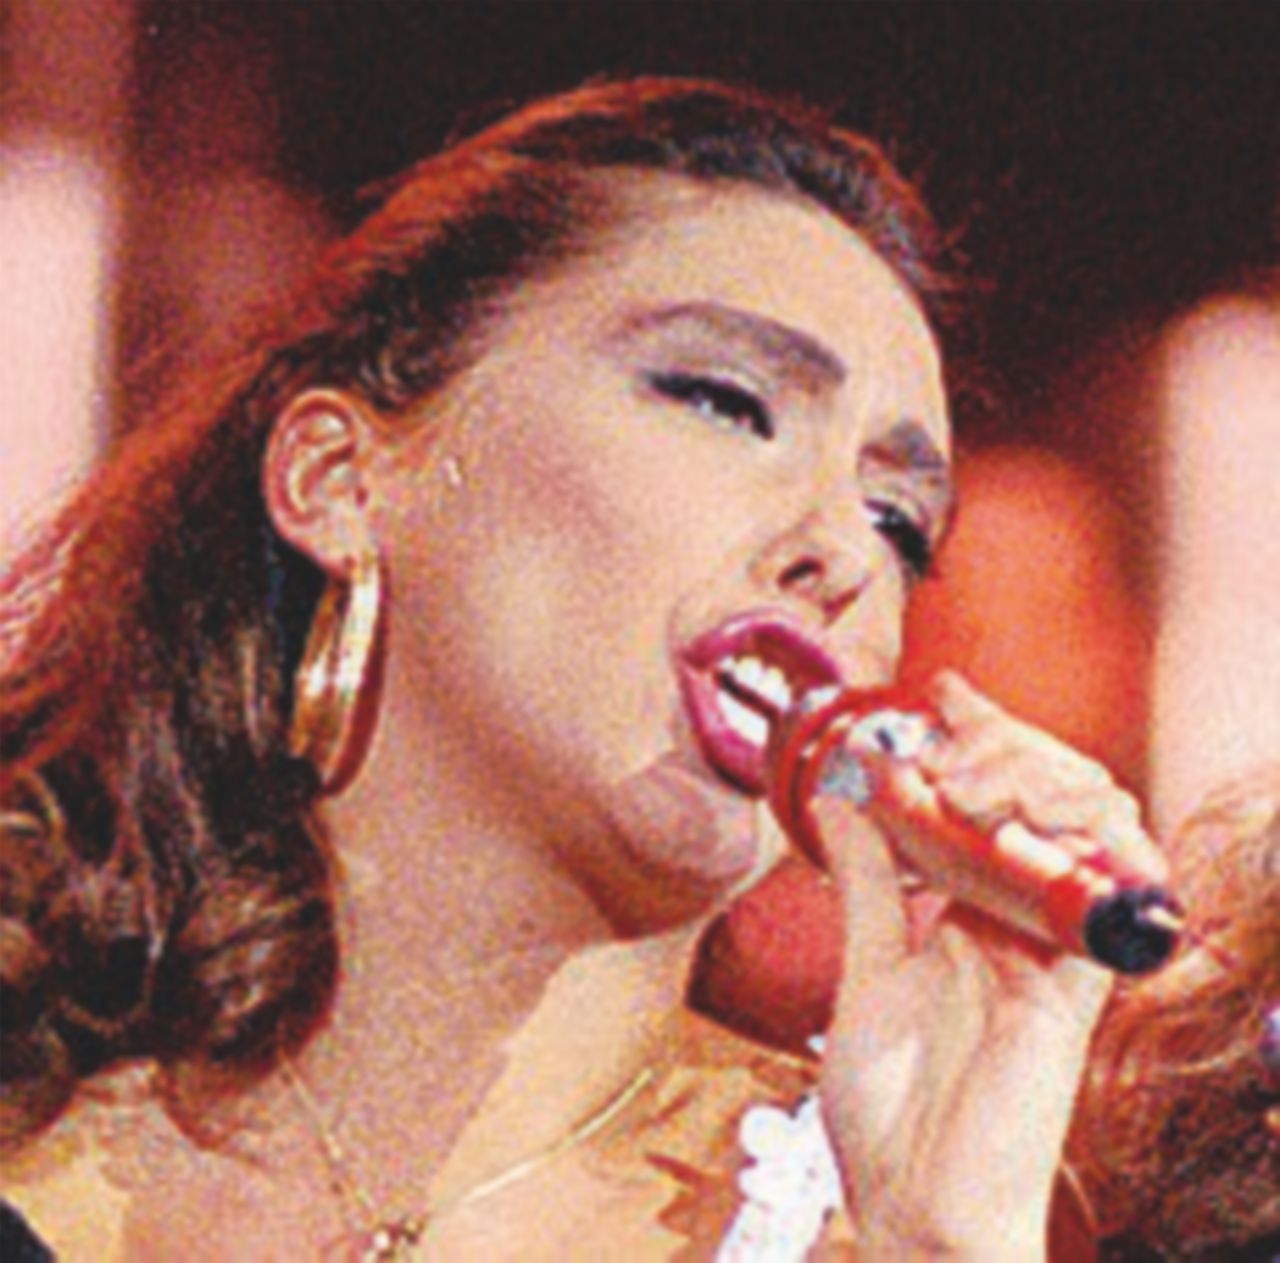 Copertina di “Boys”, 1987: quando la Salerno era un po’ Madonna